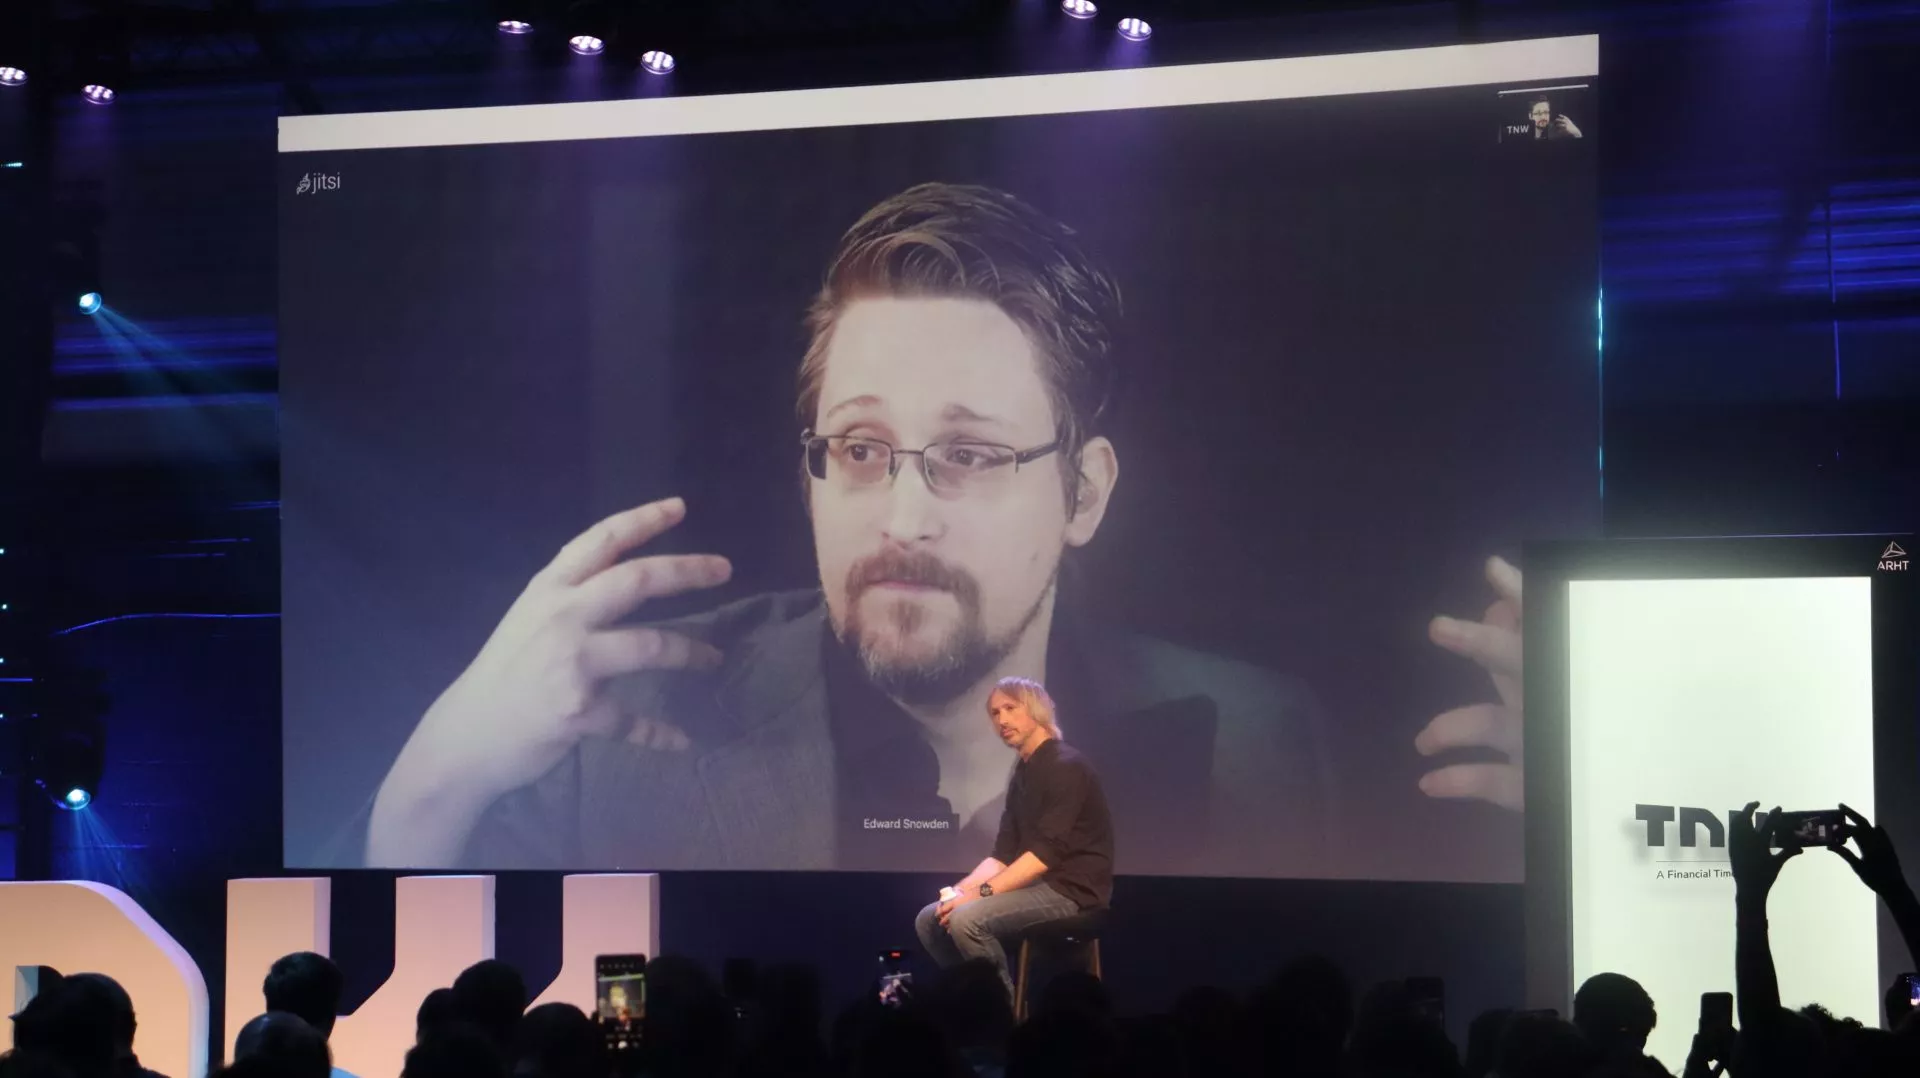 Edward Snowden prijst Bitcoin als belangrijkste monetaire ontwikkeling sinds de uitvinding van cryptomunten